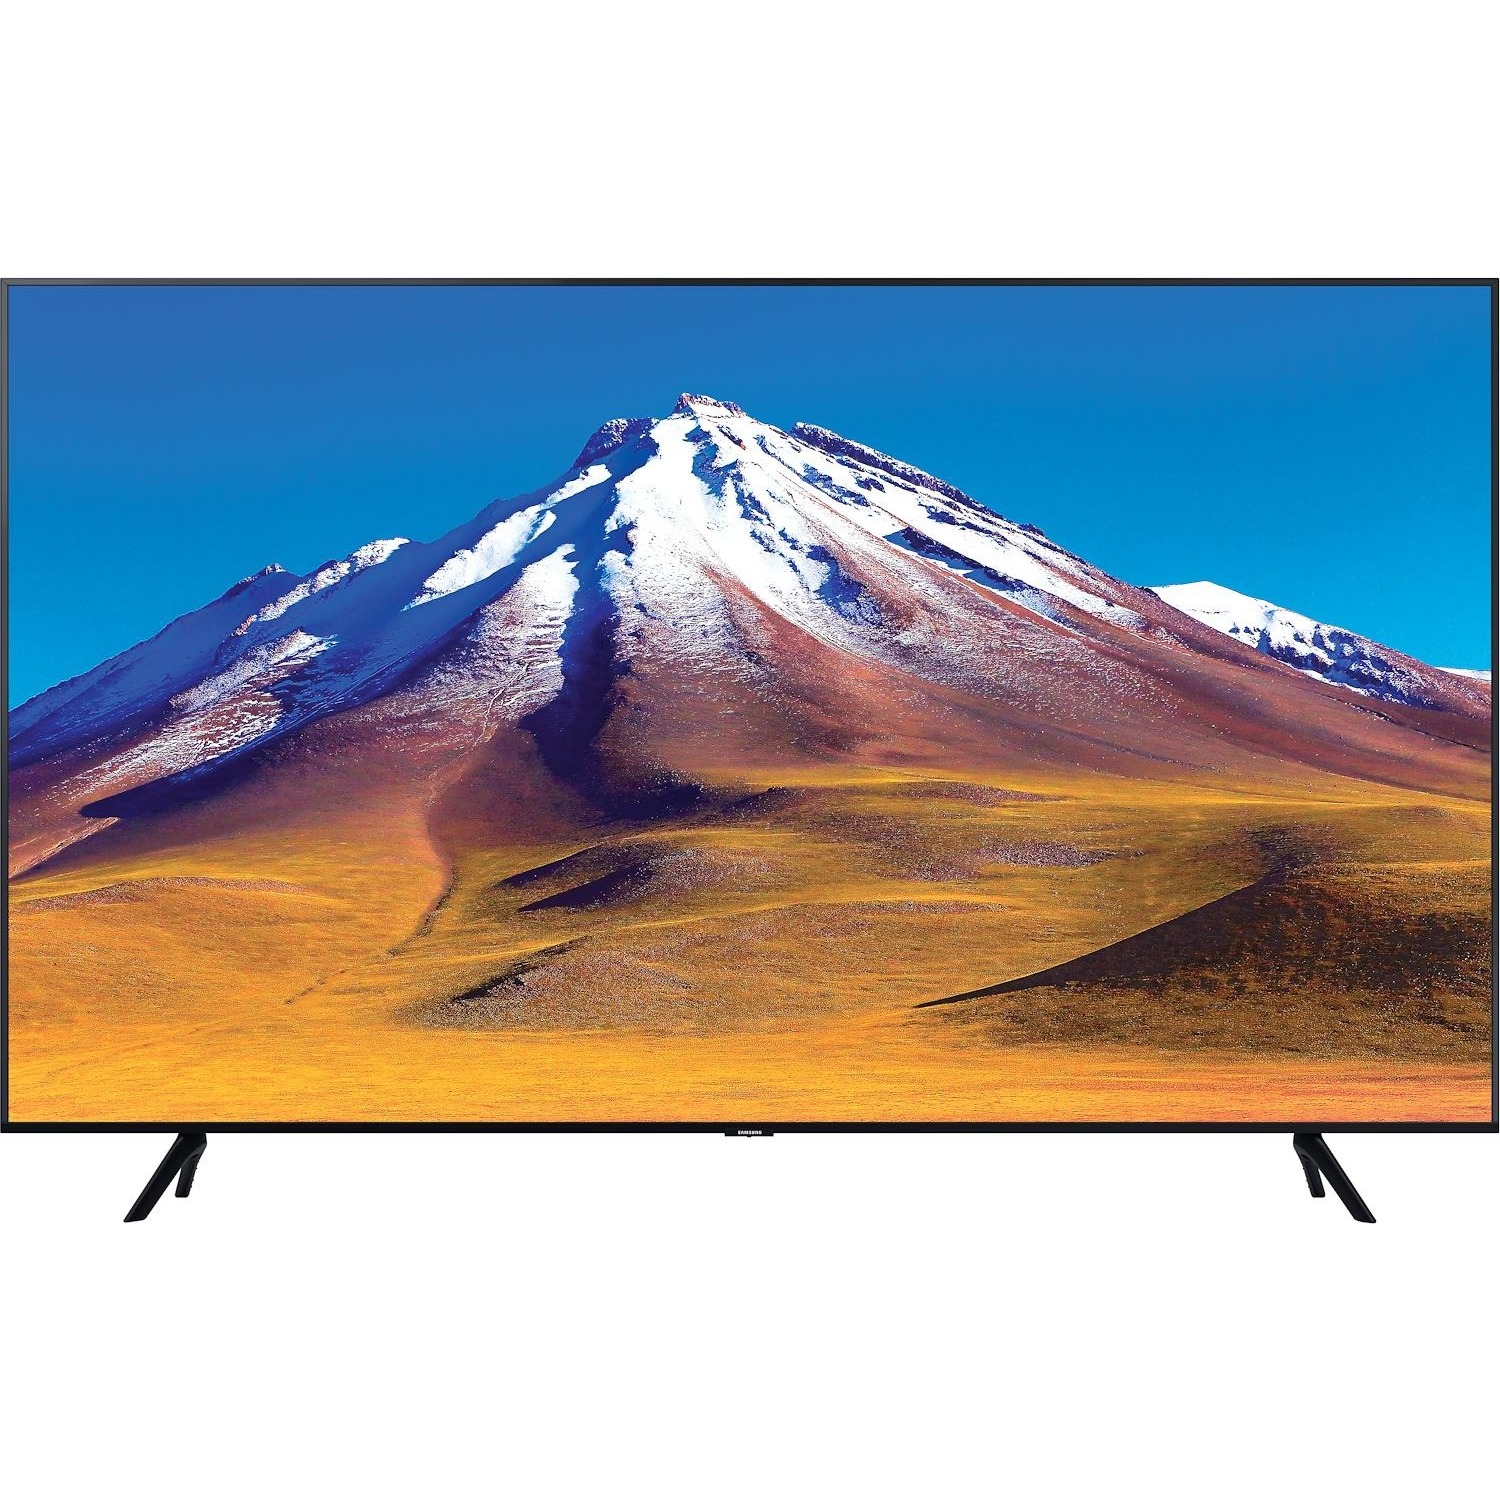 Immagine per TV LED Samsung 75TU7090 Calibrato 4K e FULL HD da DIMOStore